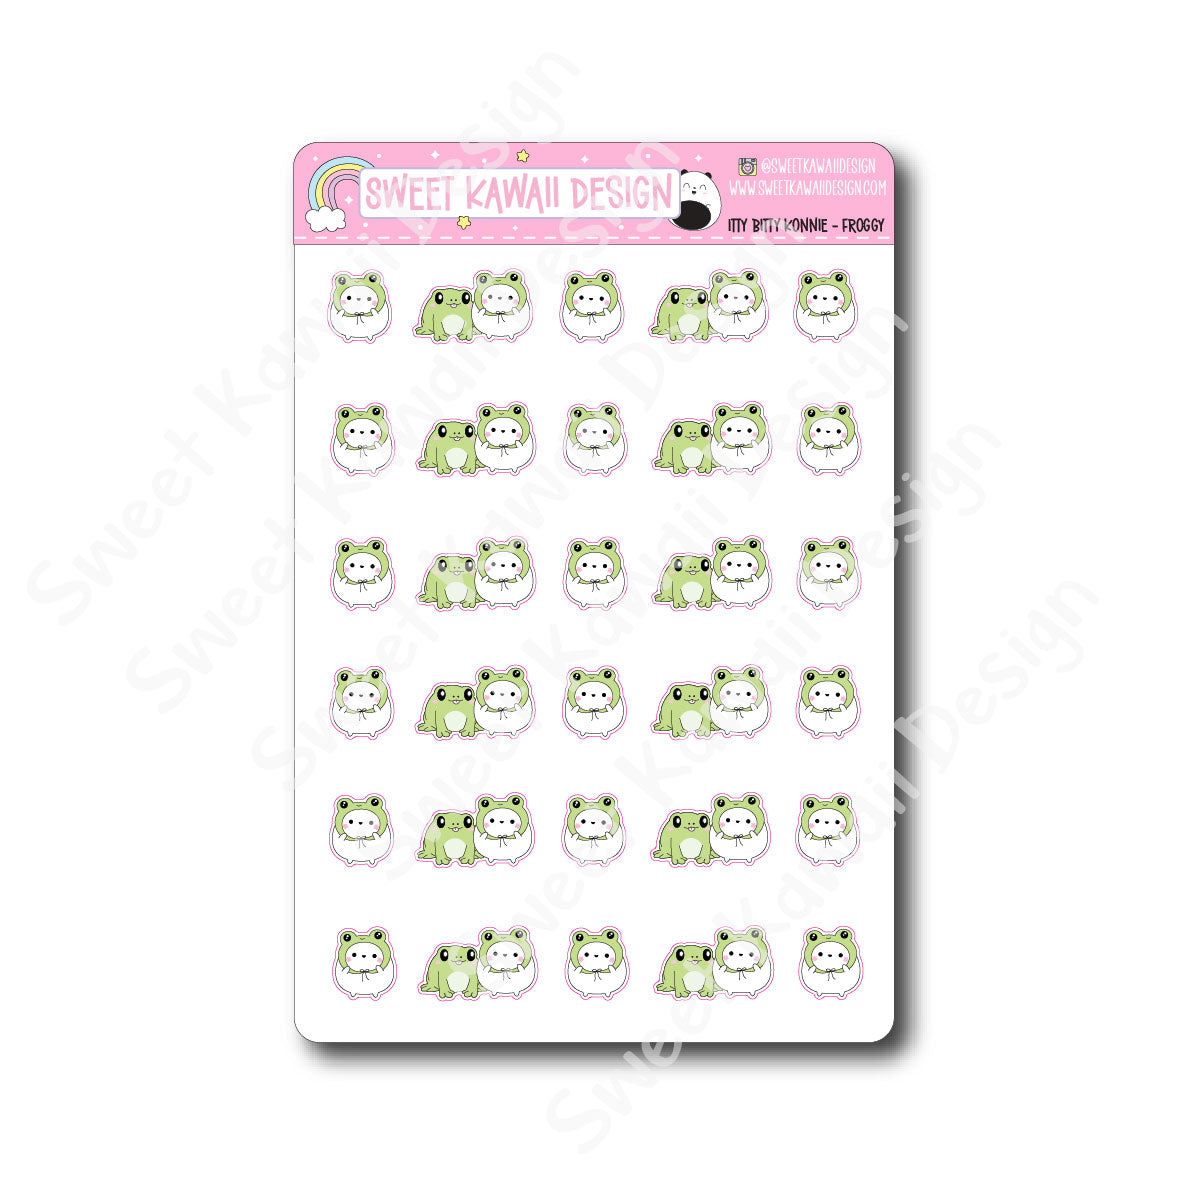 Kawaii Konnie Stickers - Froggy